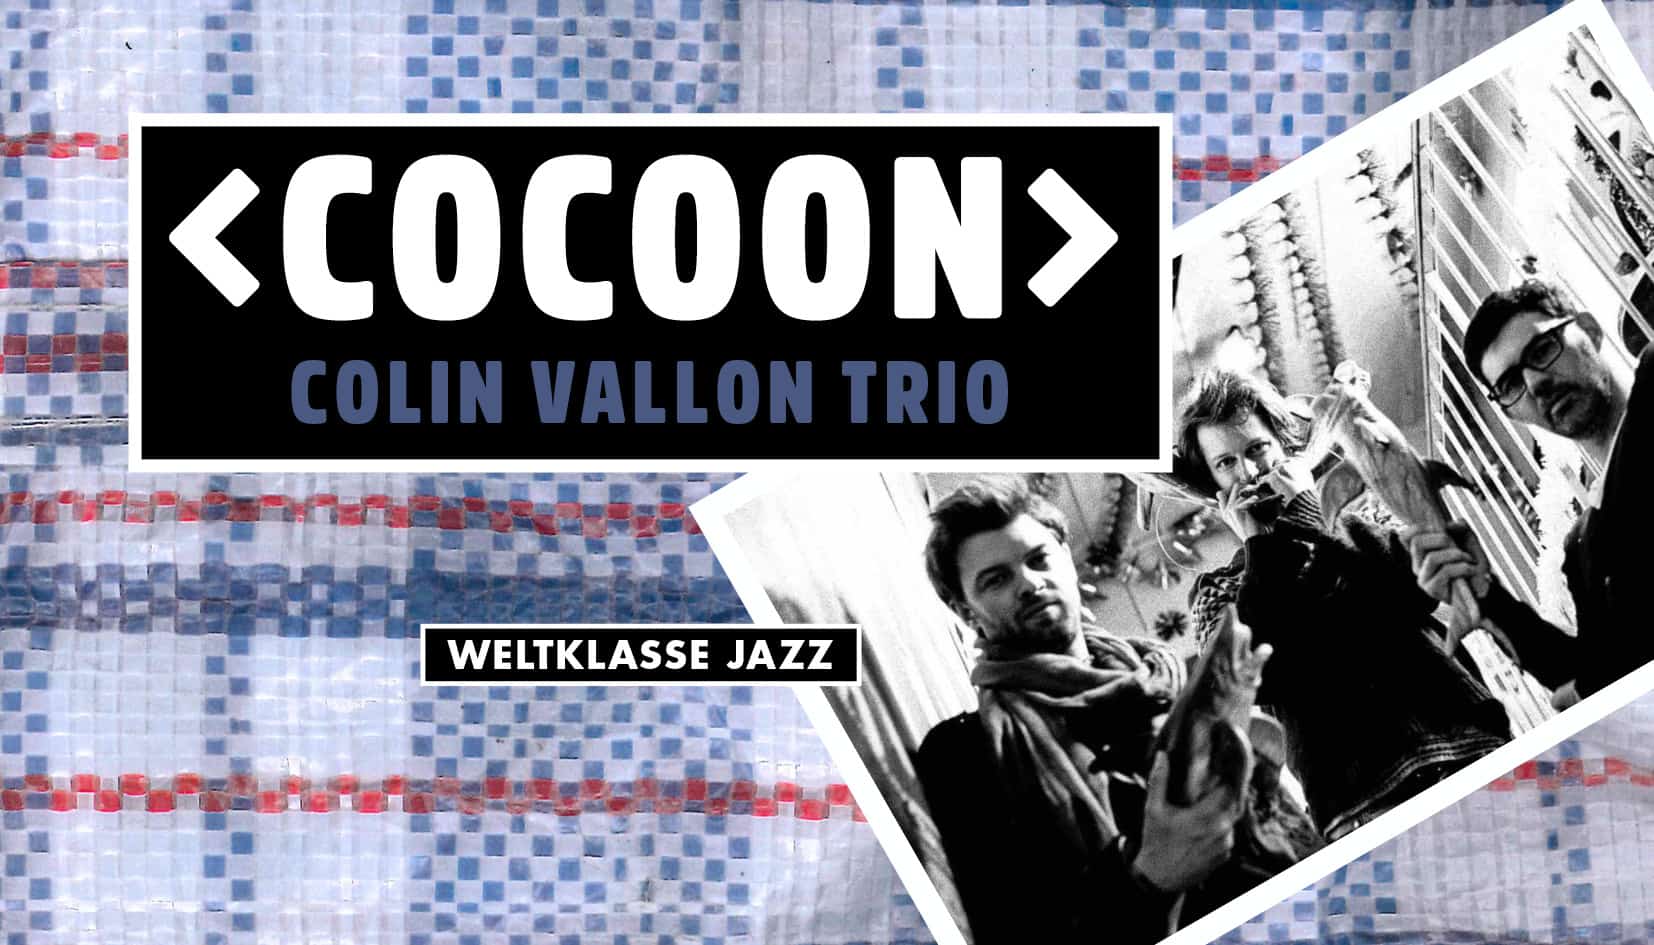 «COCOON» COLIN VALLON TRIO